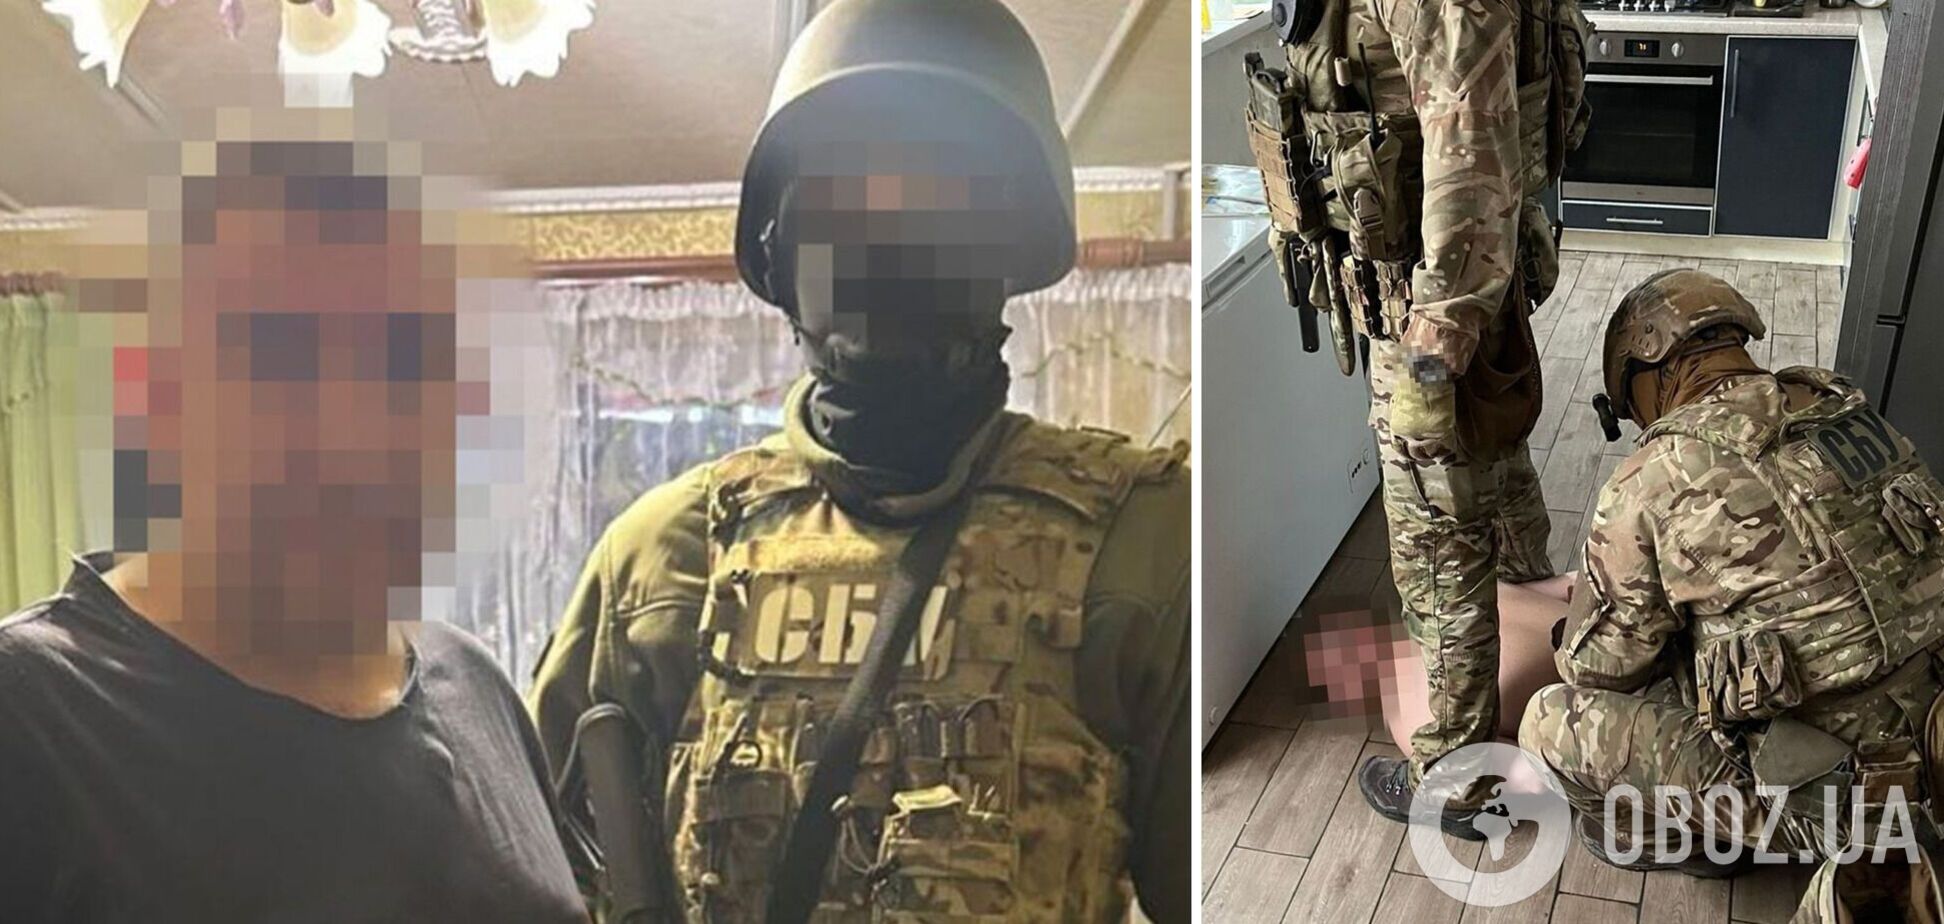 СБУ задержала на востоке Украины двух агентов ФСБ, охотившихся на HIMARS: данные сливали в Москву. Фото